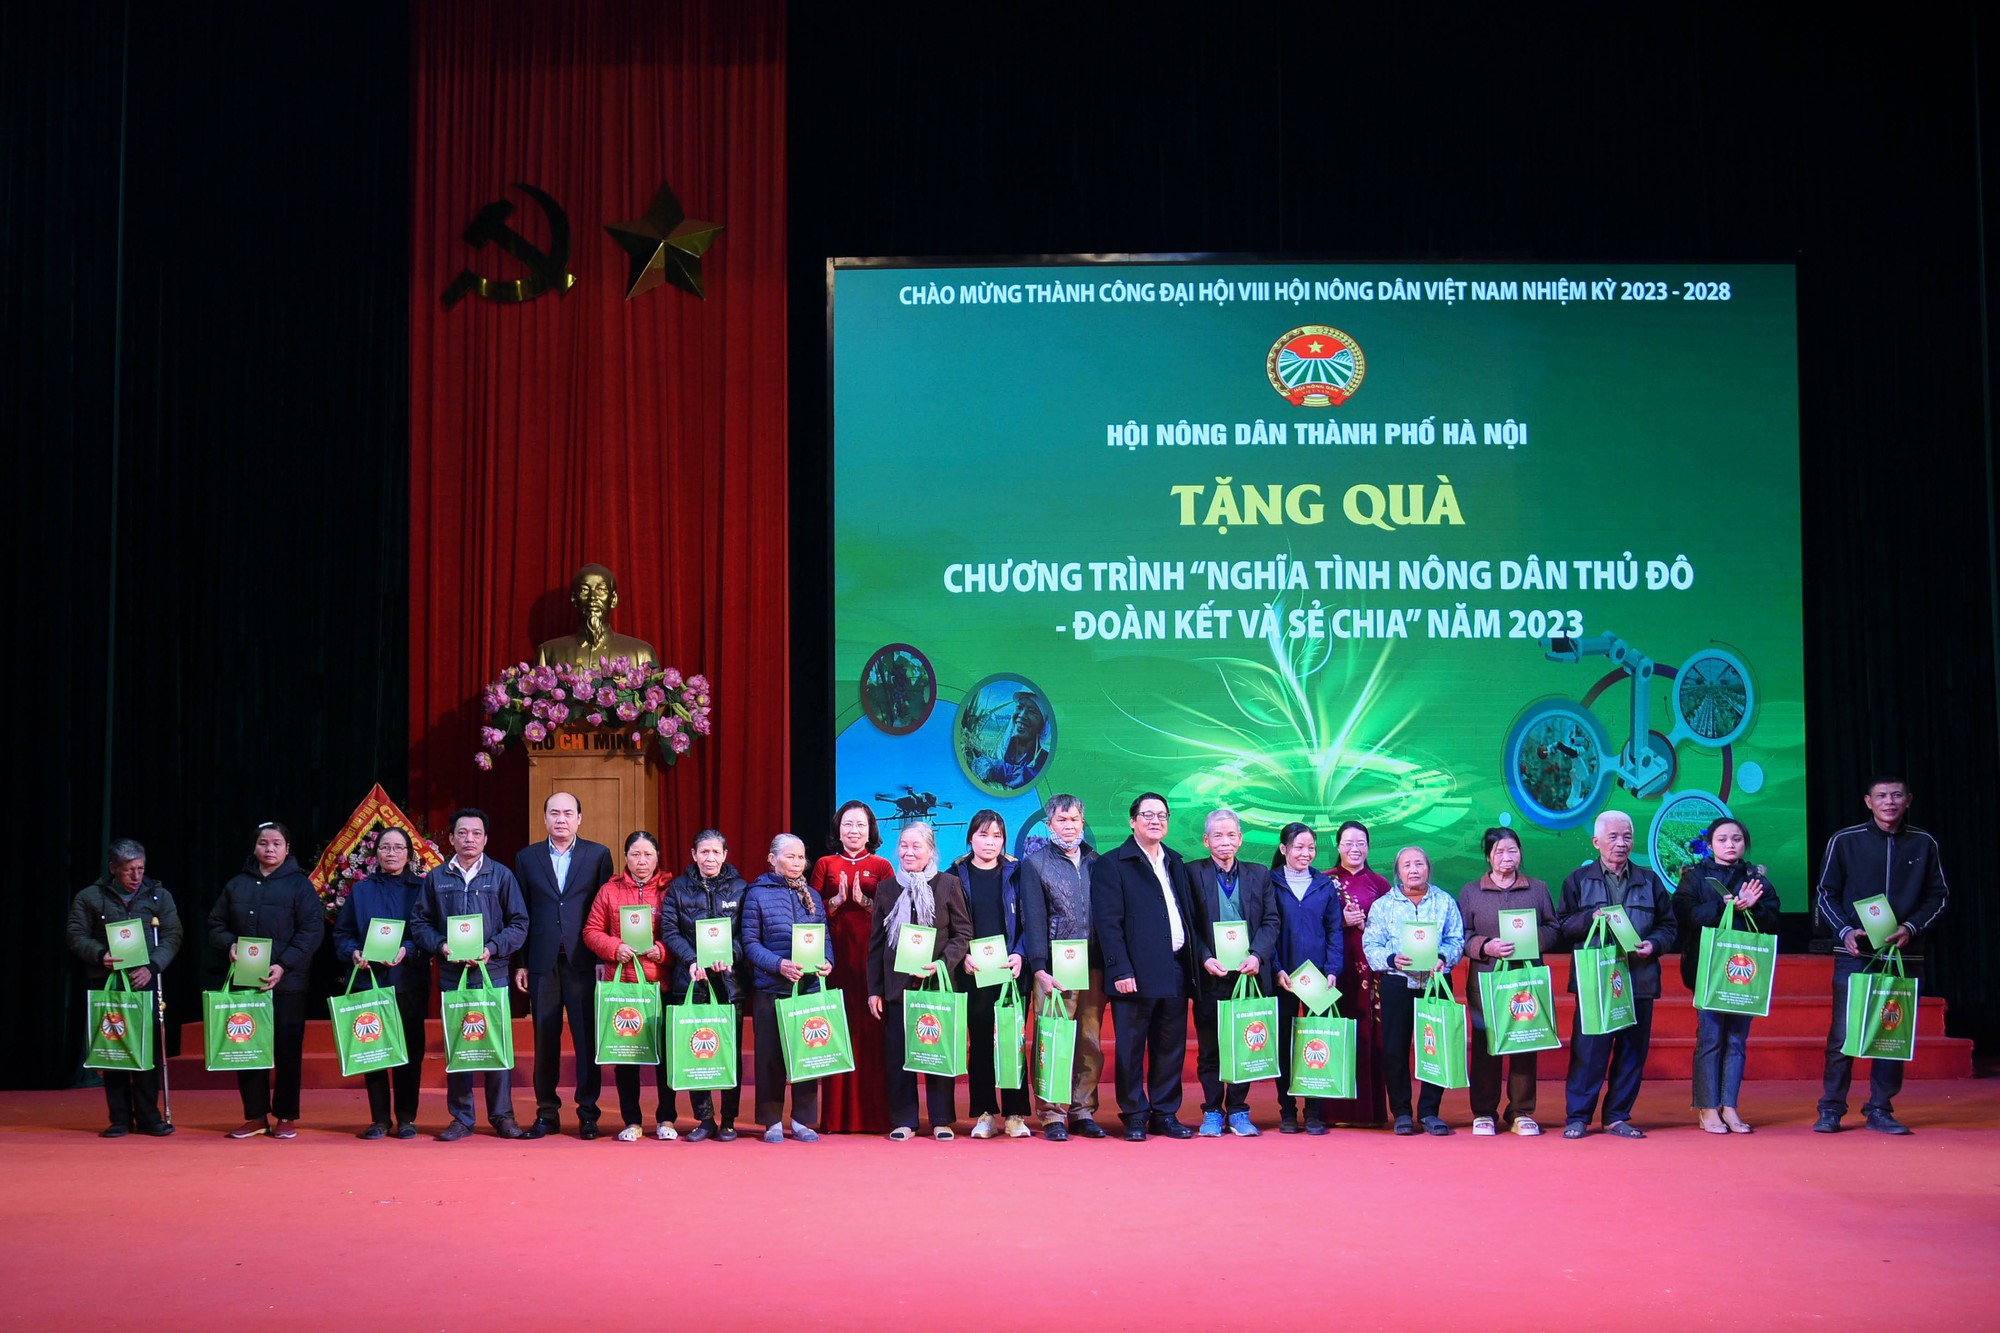 Hội Nông dân Hà Nội tổ chức Lễ mít tinh chào mừng thành công Đại hội đại biểu toàn quốc Hội NDVN lần thứ VIII - Ảnh 8.